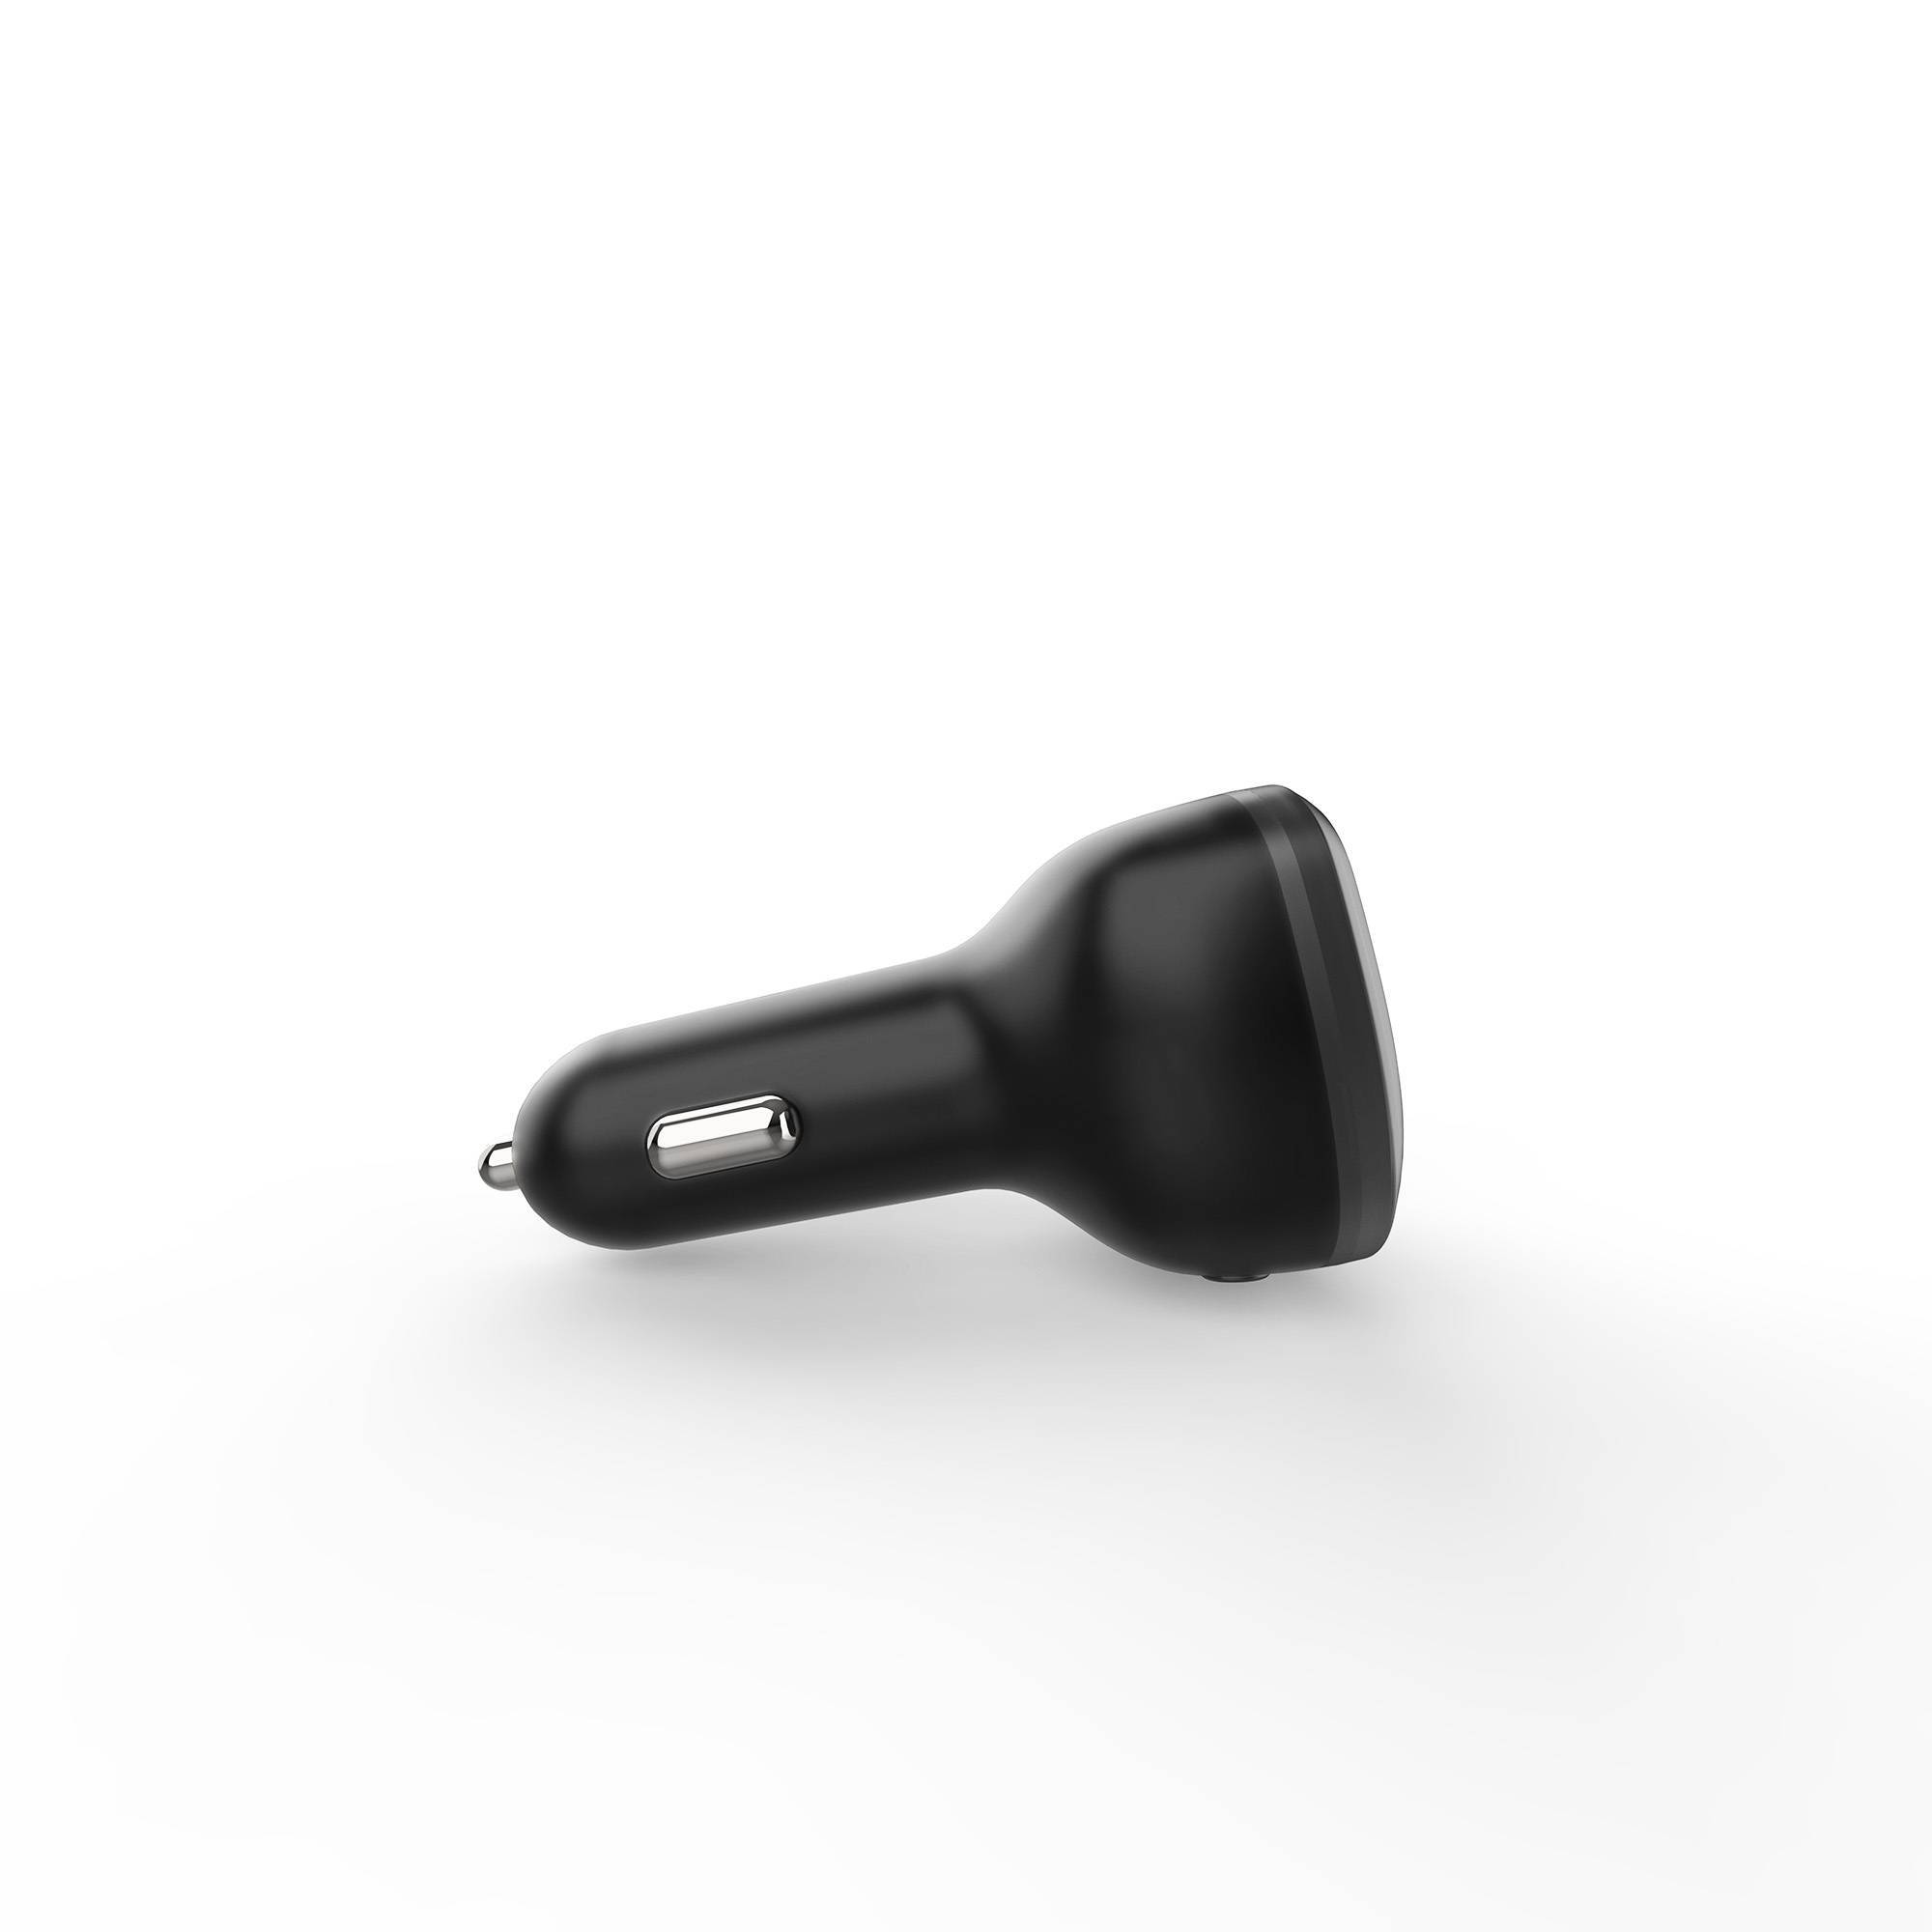 Transmetteur FM Energy Sistem pour voiture - Bluetooth - MicroSD - USB MP3 - Assistant vocal - Mains libres - Couleur Noir